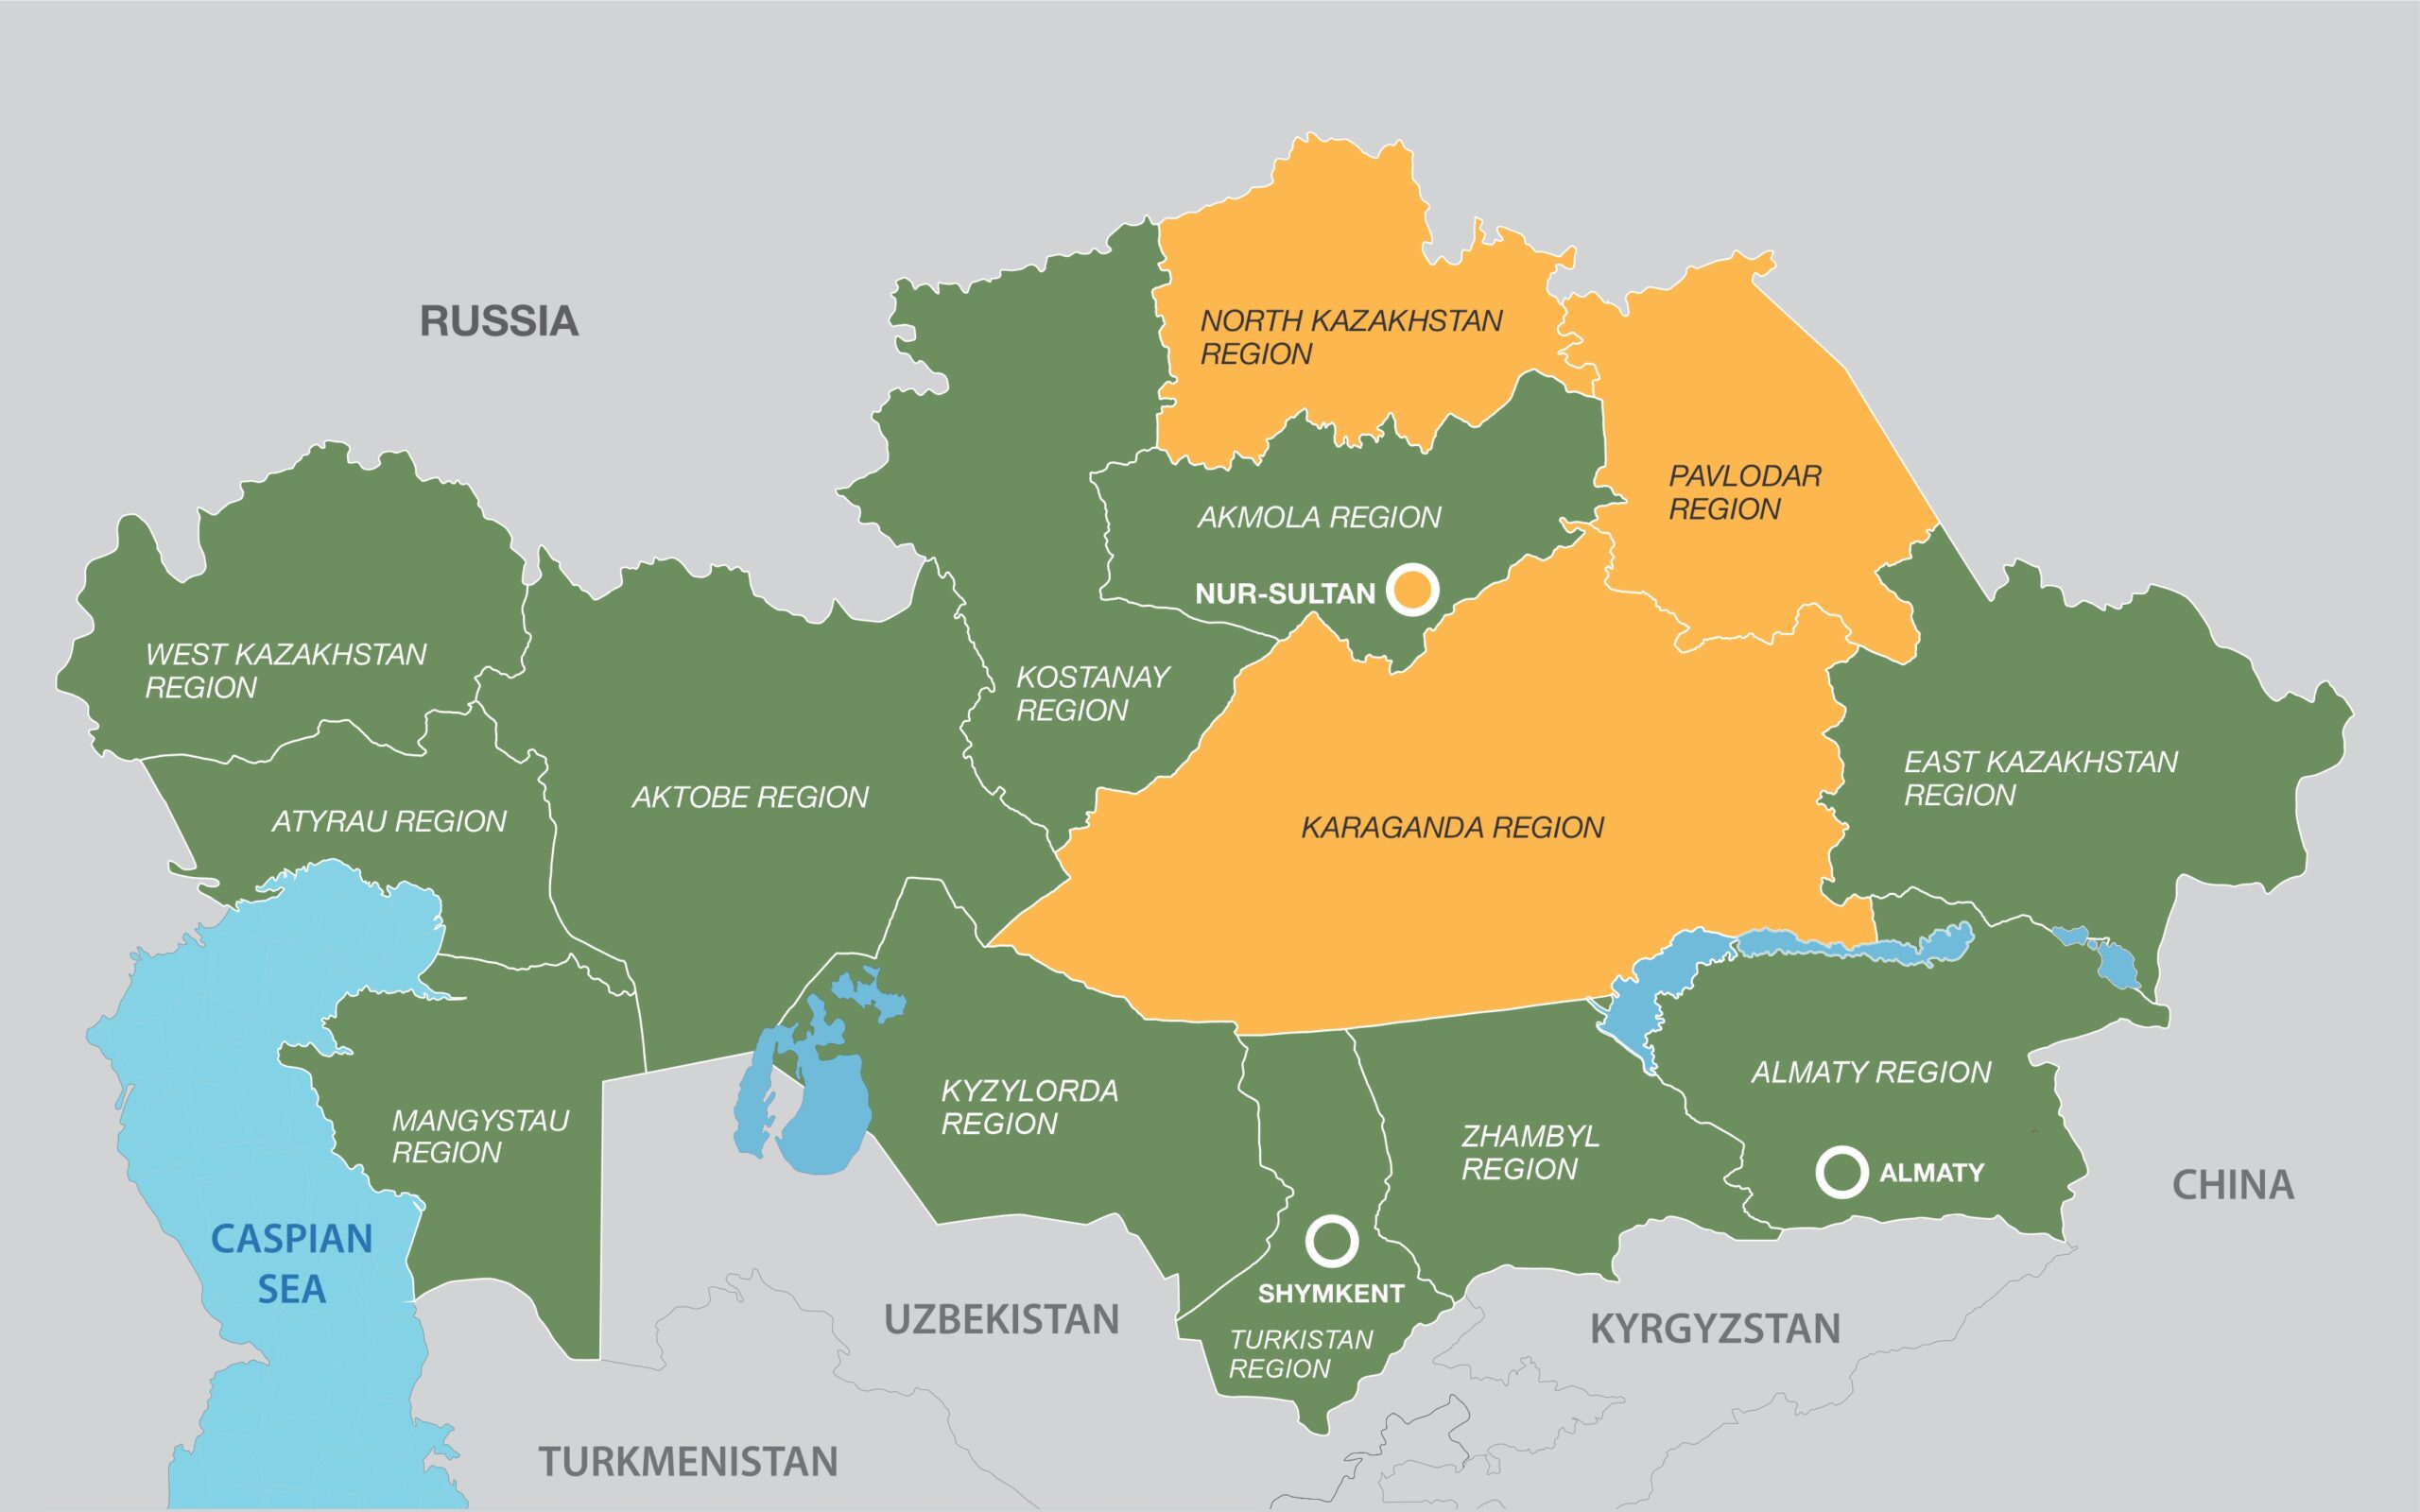 Карта интернета казахстан